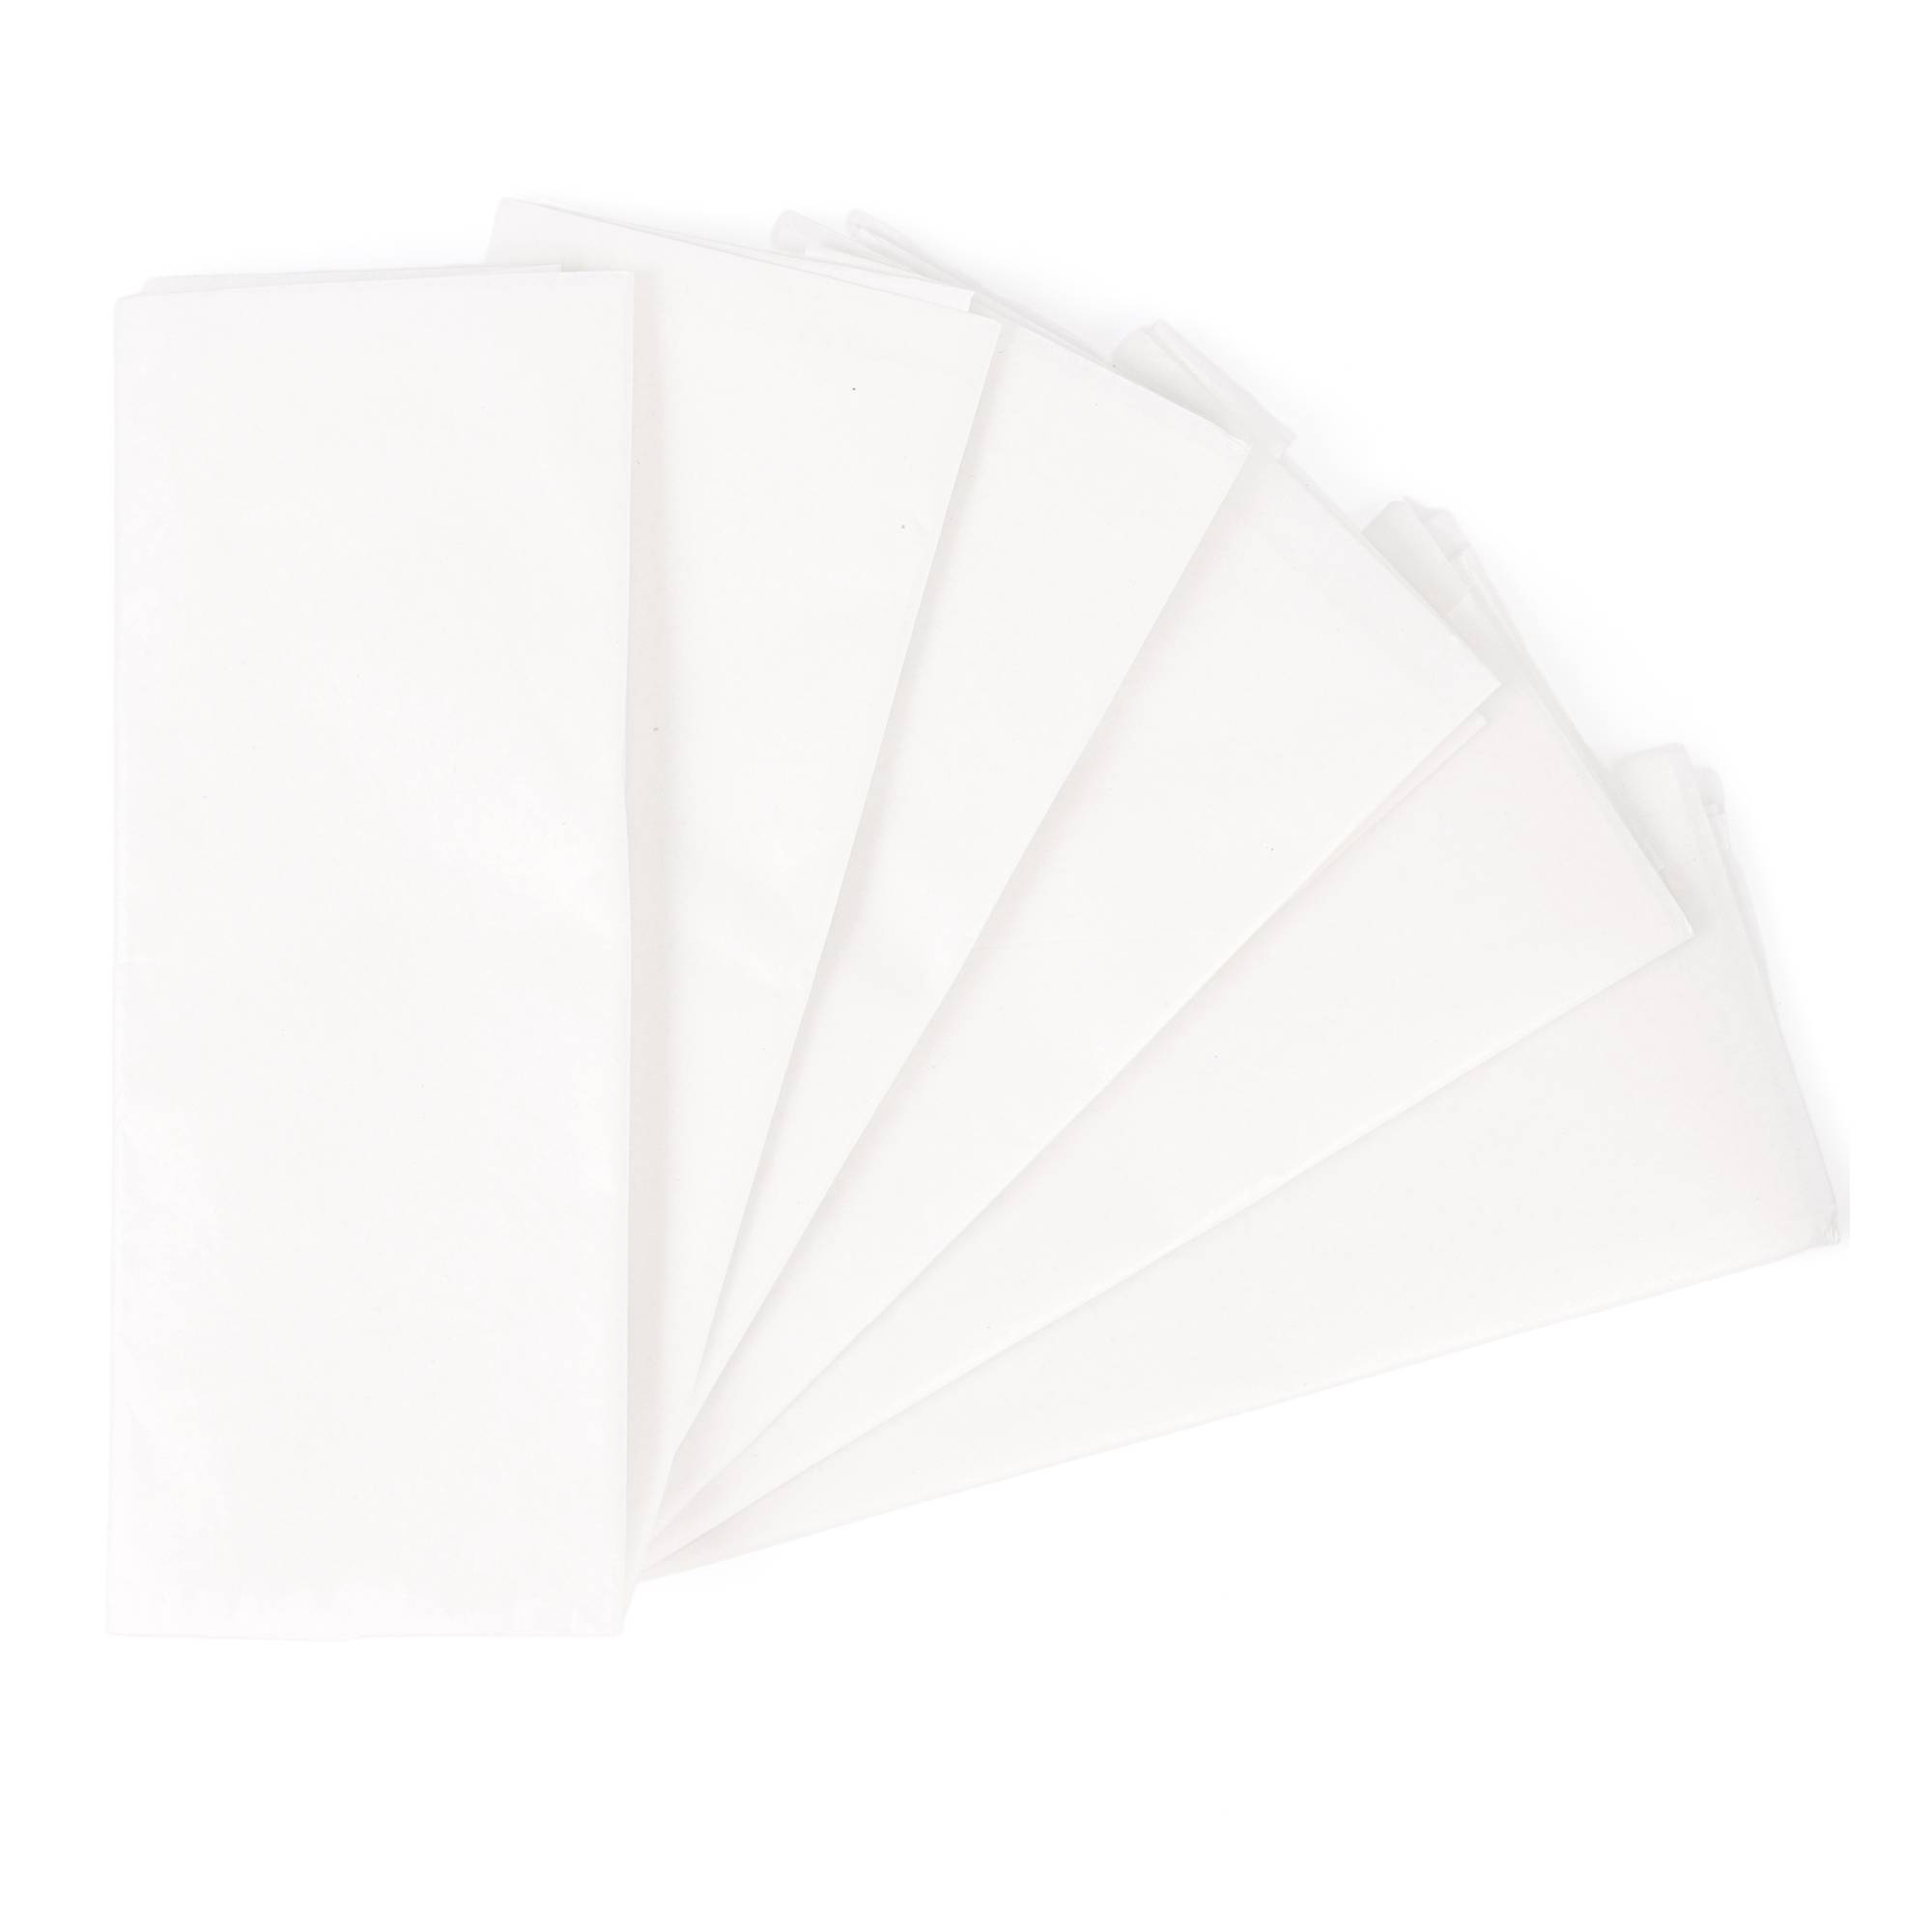 Buy White Paper Easel Pad 42cm x 50cm 50 Sheets for GBP 6.50, Hobbycraft  UK